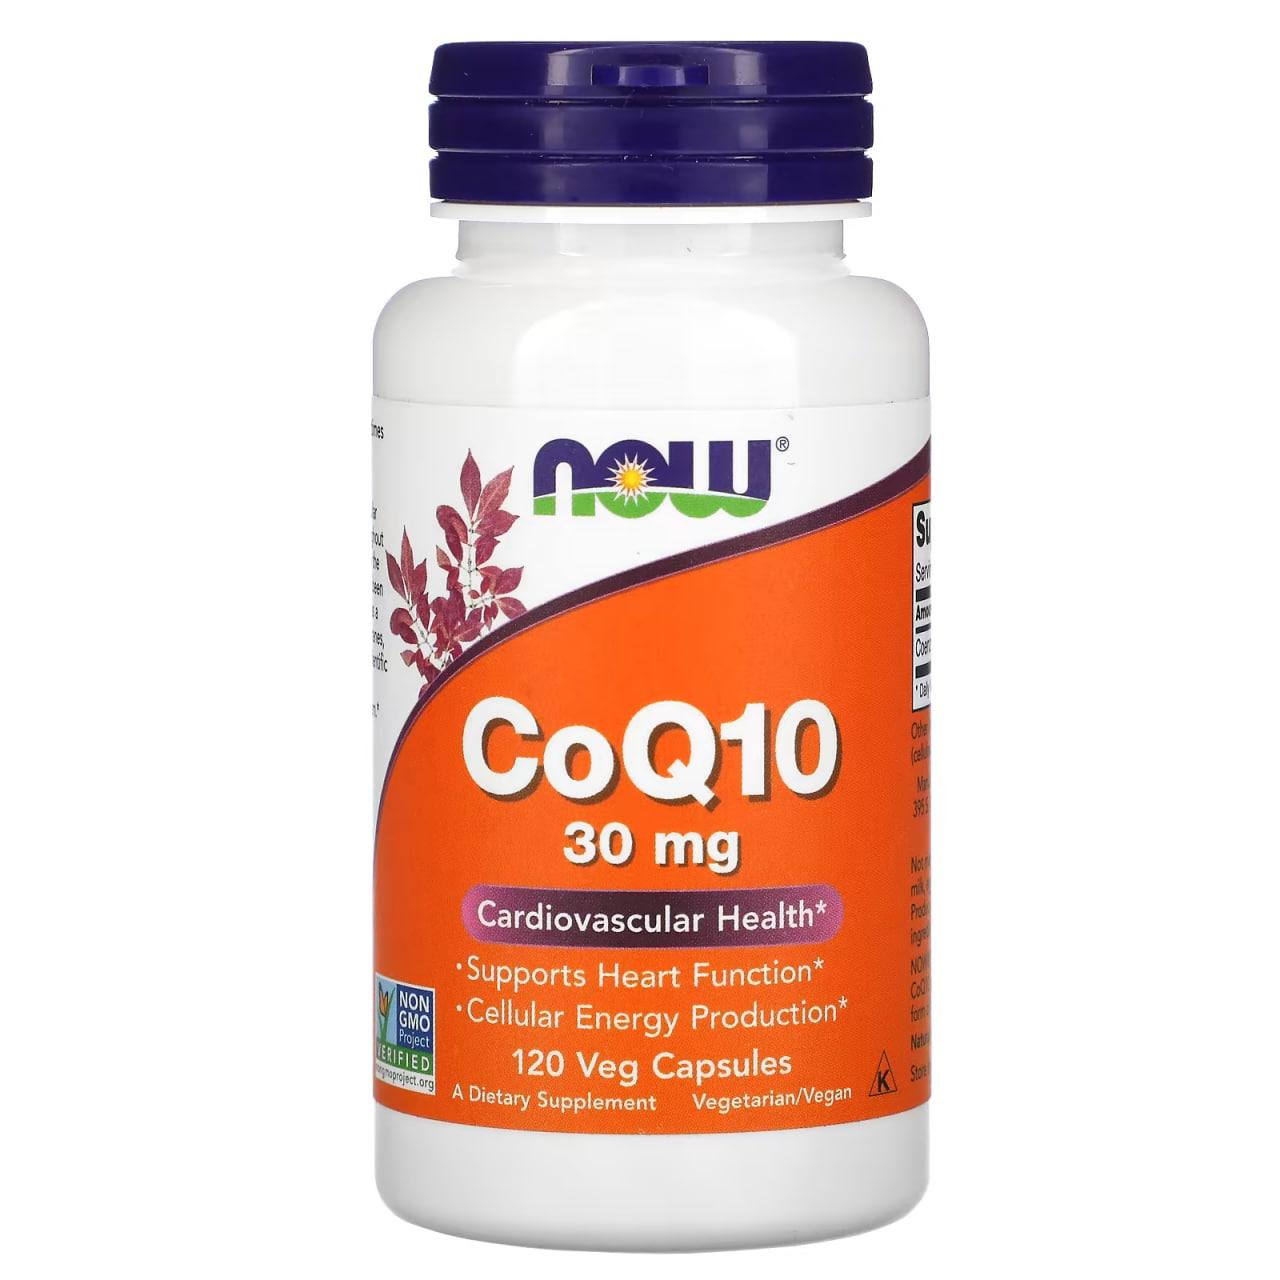 Коэнзим NOW Foods CoQ10 30 mg 120 Caps,  мл, Now. Спец препараты. 